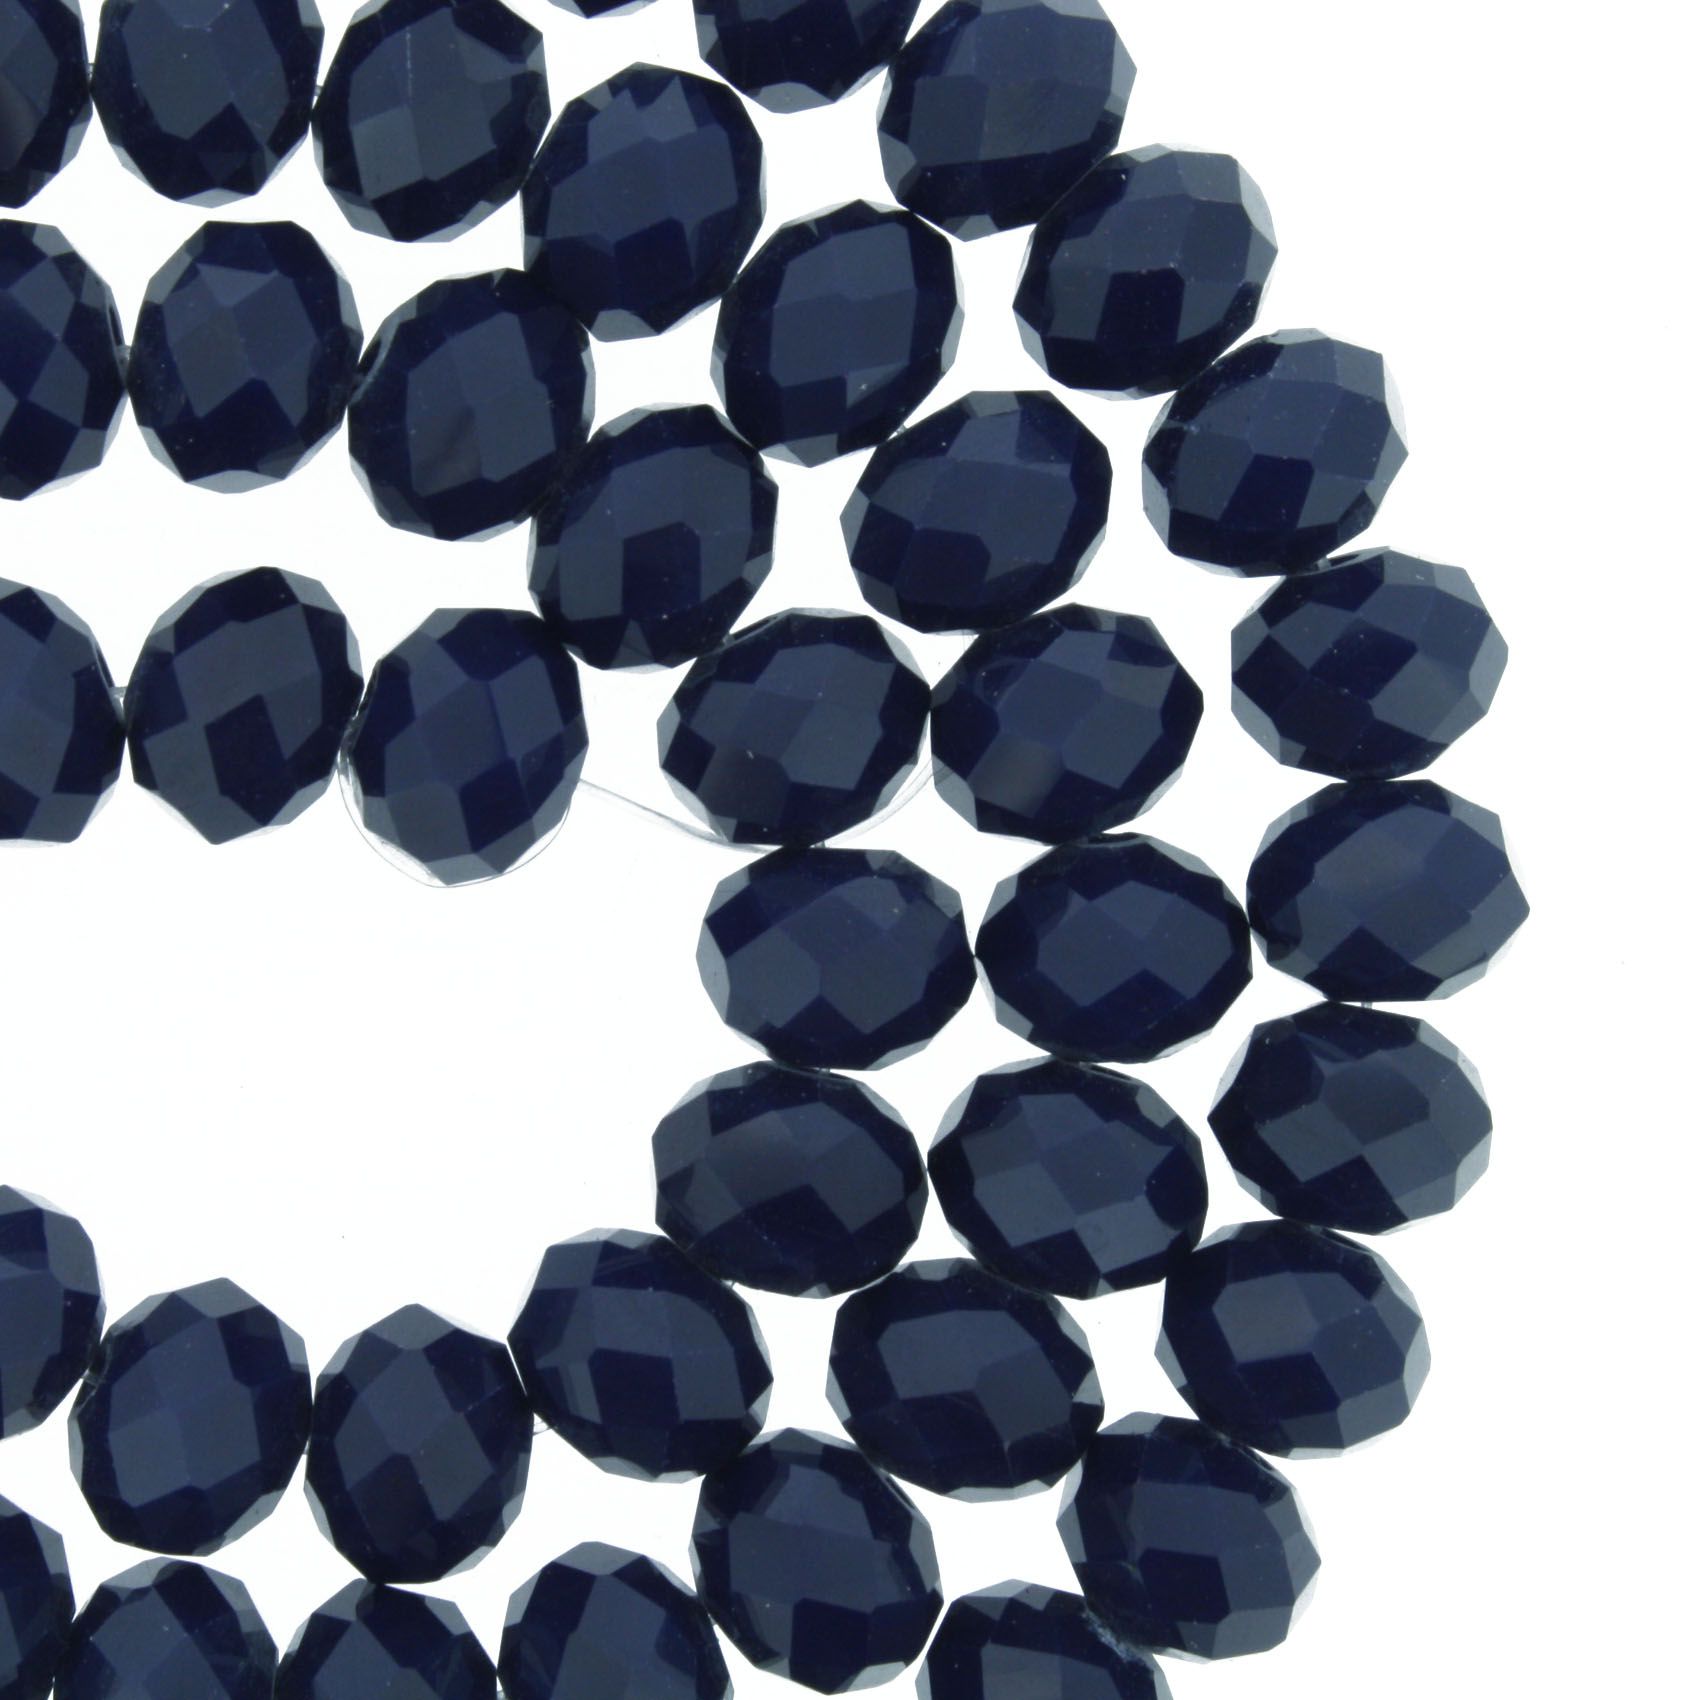 Fio de Cristal - Flat® - Azul Marinho - 8mm  - Stéphanie Bijoux® - Peças para Bijuterias e Artesanato